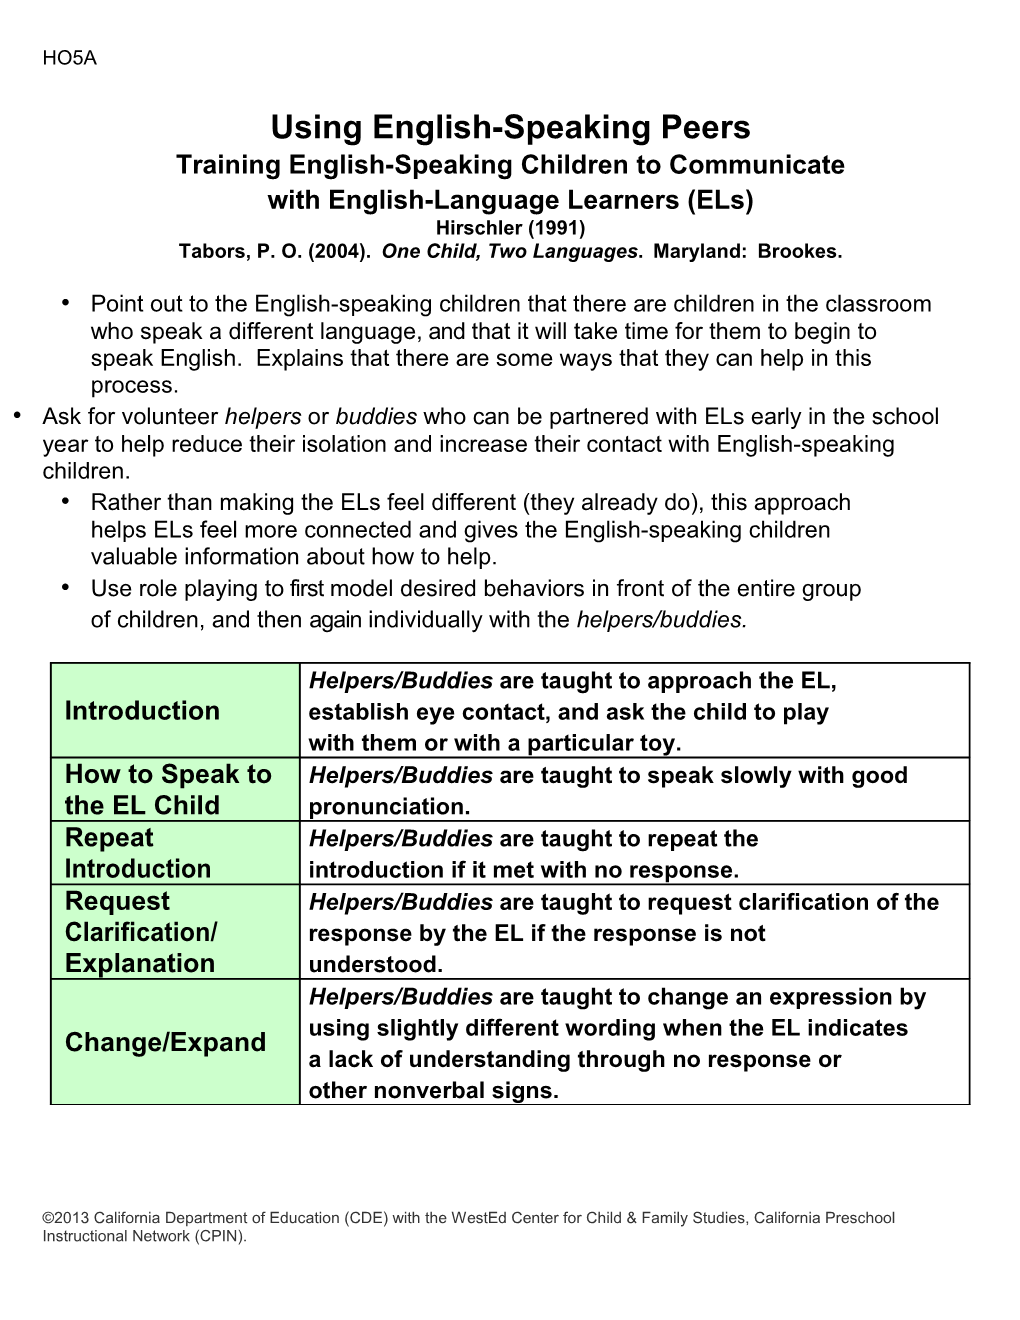 Trainingenglish-Speakingchildrentocommunicatewithenglish-Languagelearners(Els)